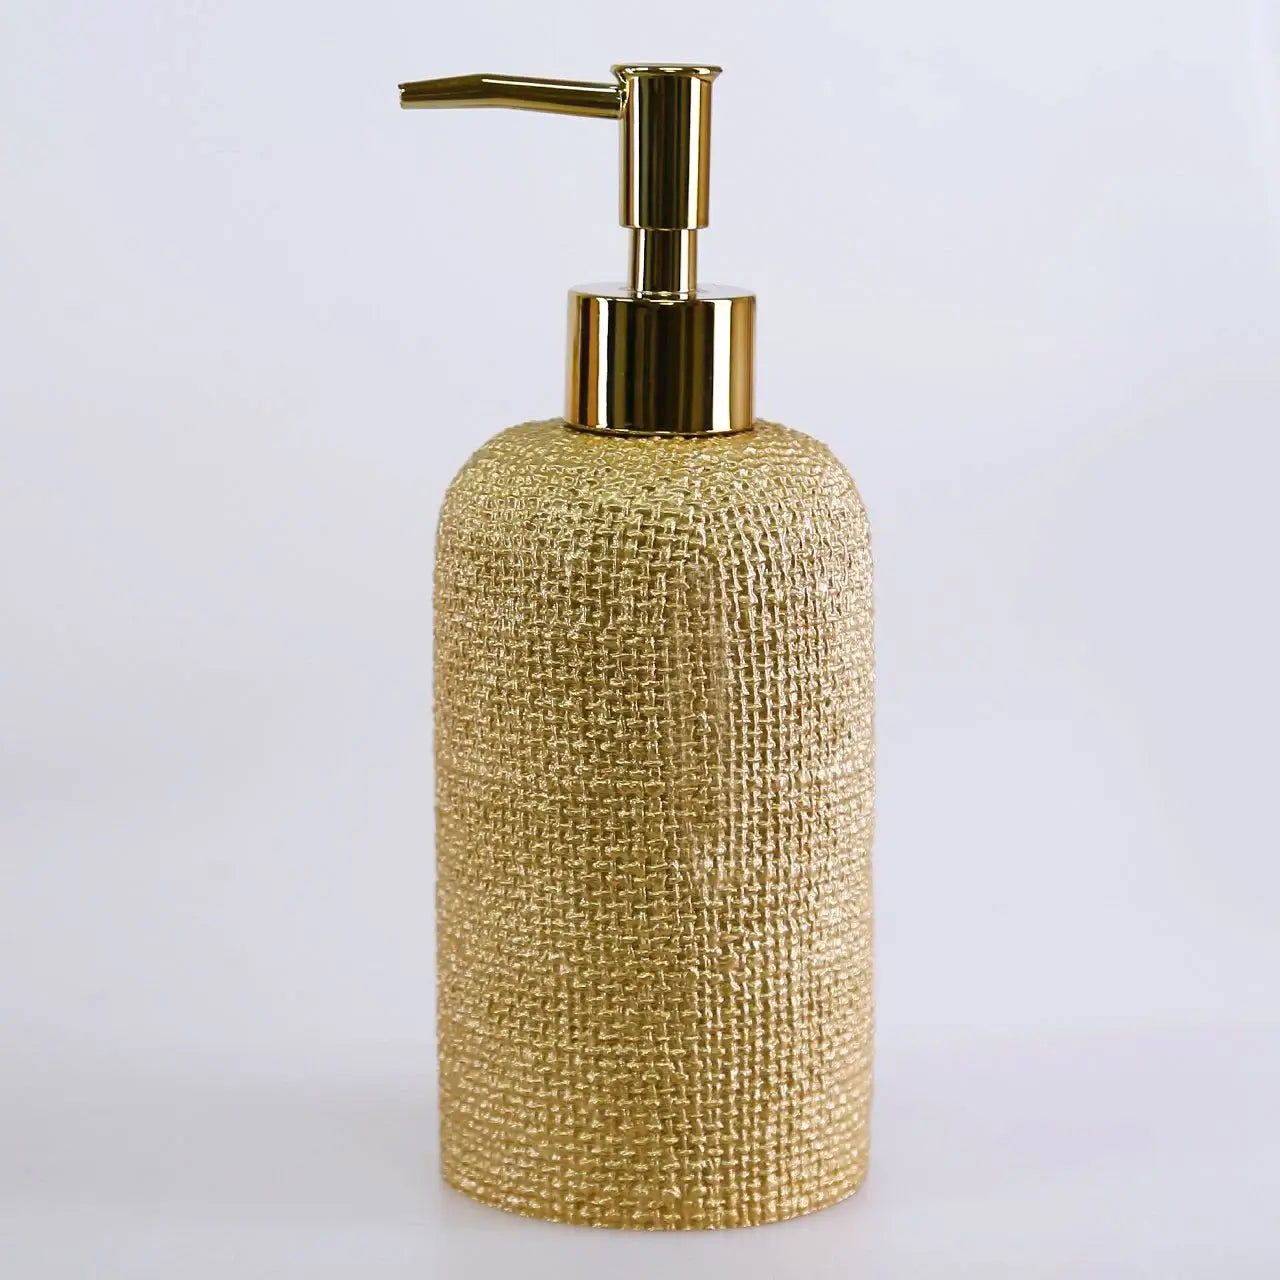 Ebru Gold Color 5 Piece Bathroom Accessory Set, Luxury Resin Modern Bath Decor by Creative Home,BAS-SLM-EBRU-G